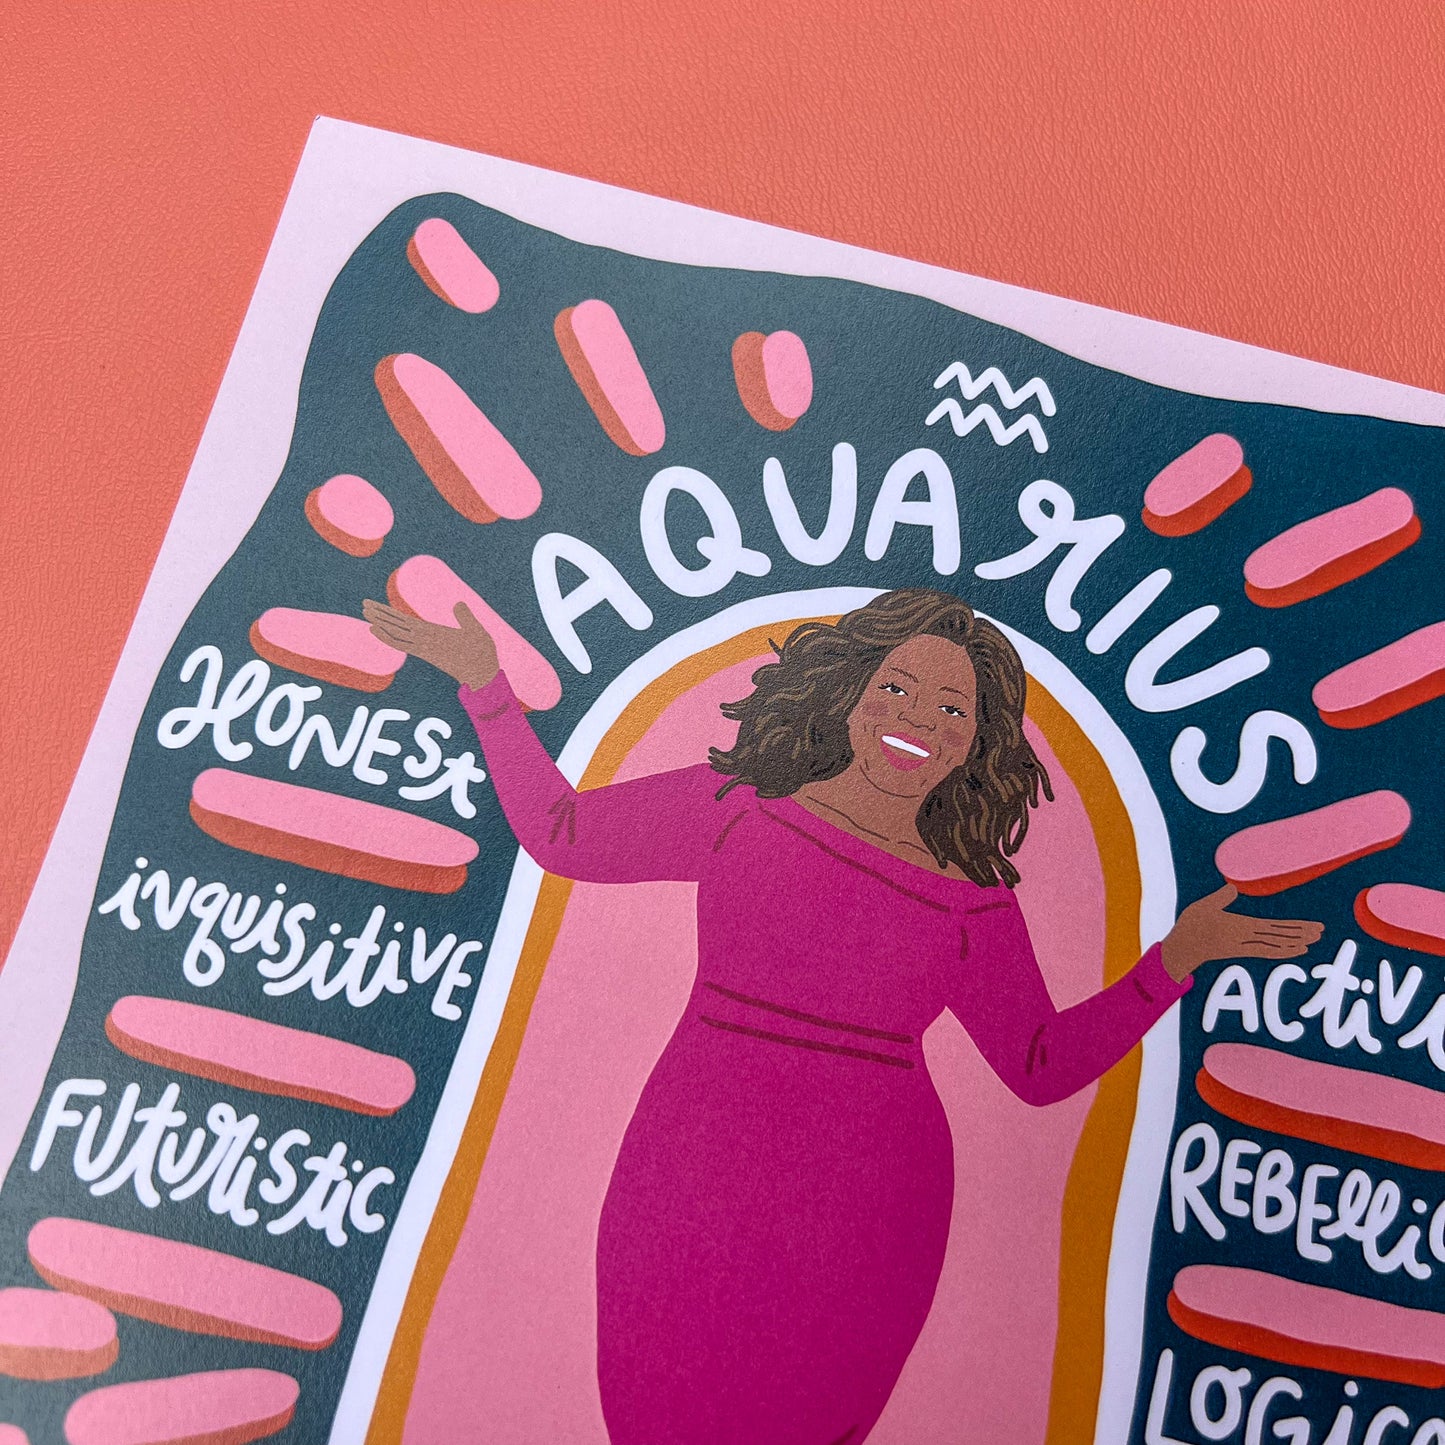 Aquarius Oprah - Print - 8x8"